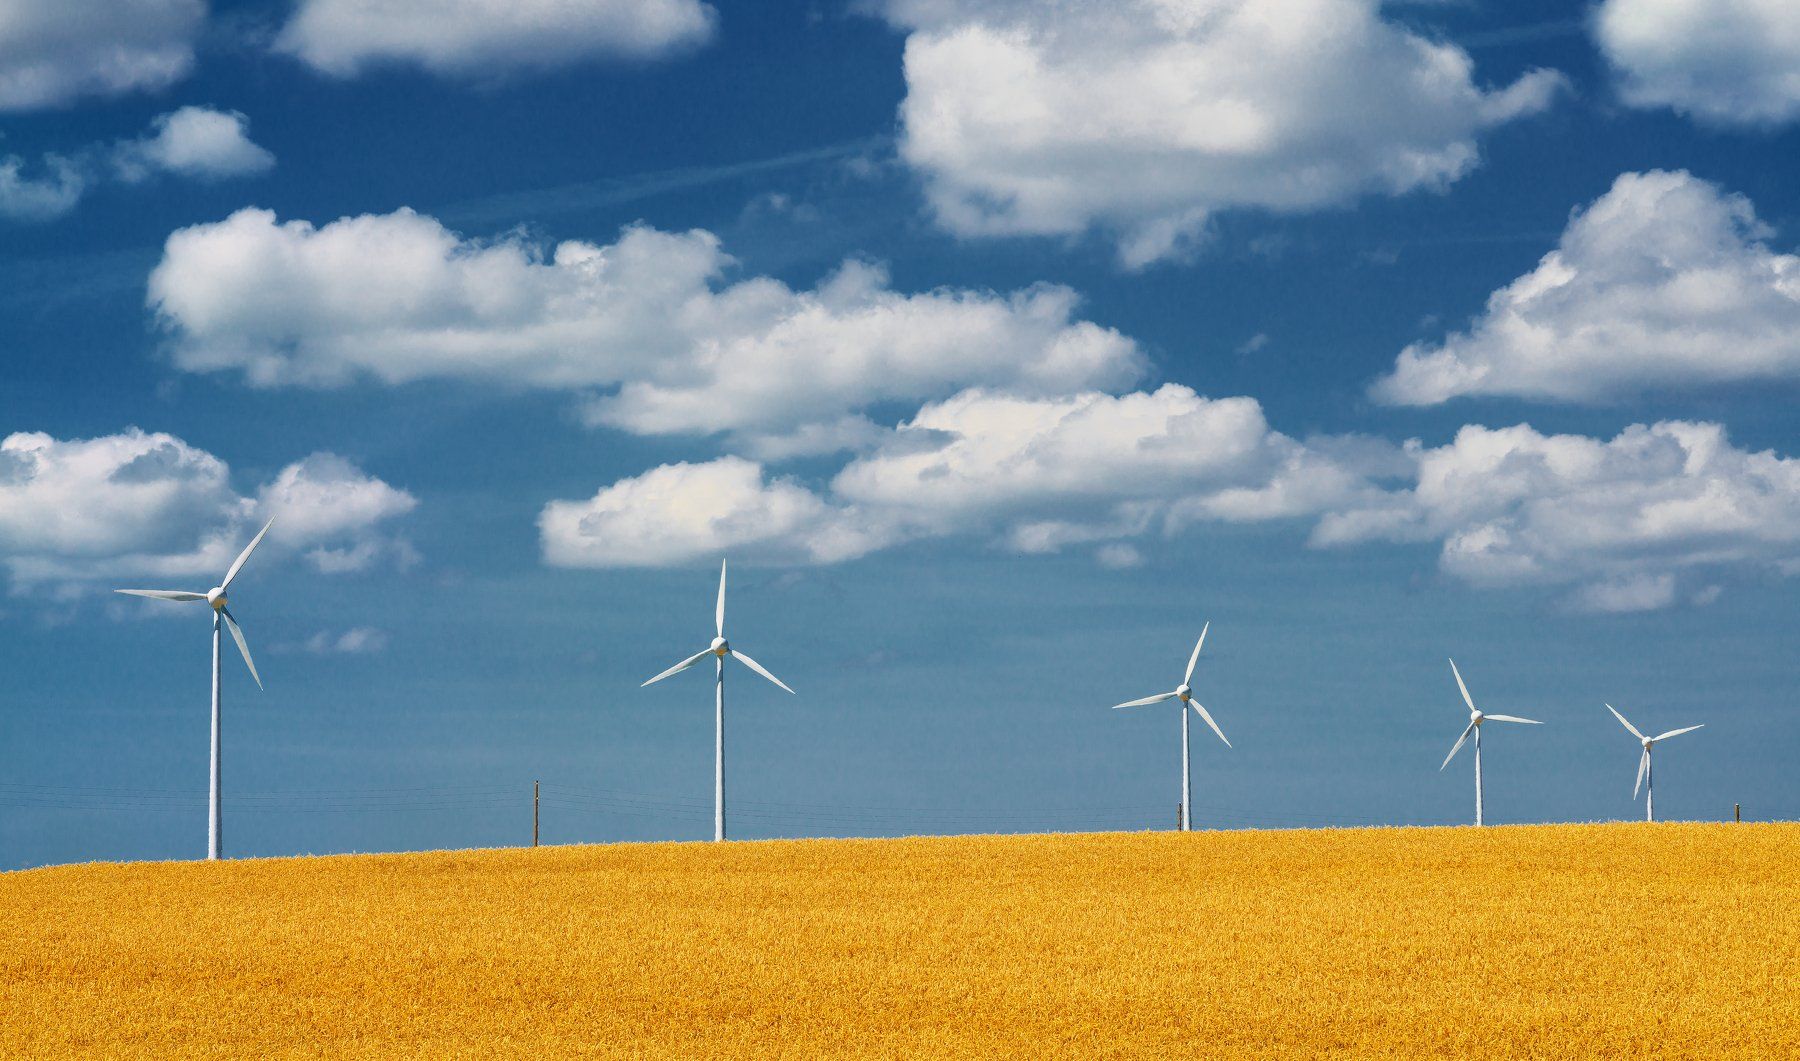 небо, облака, ветрогенератор, пшеница, поле, электричество, экология, синий, желтый, белый, Sergey Skopintsev